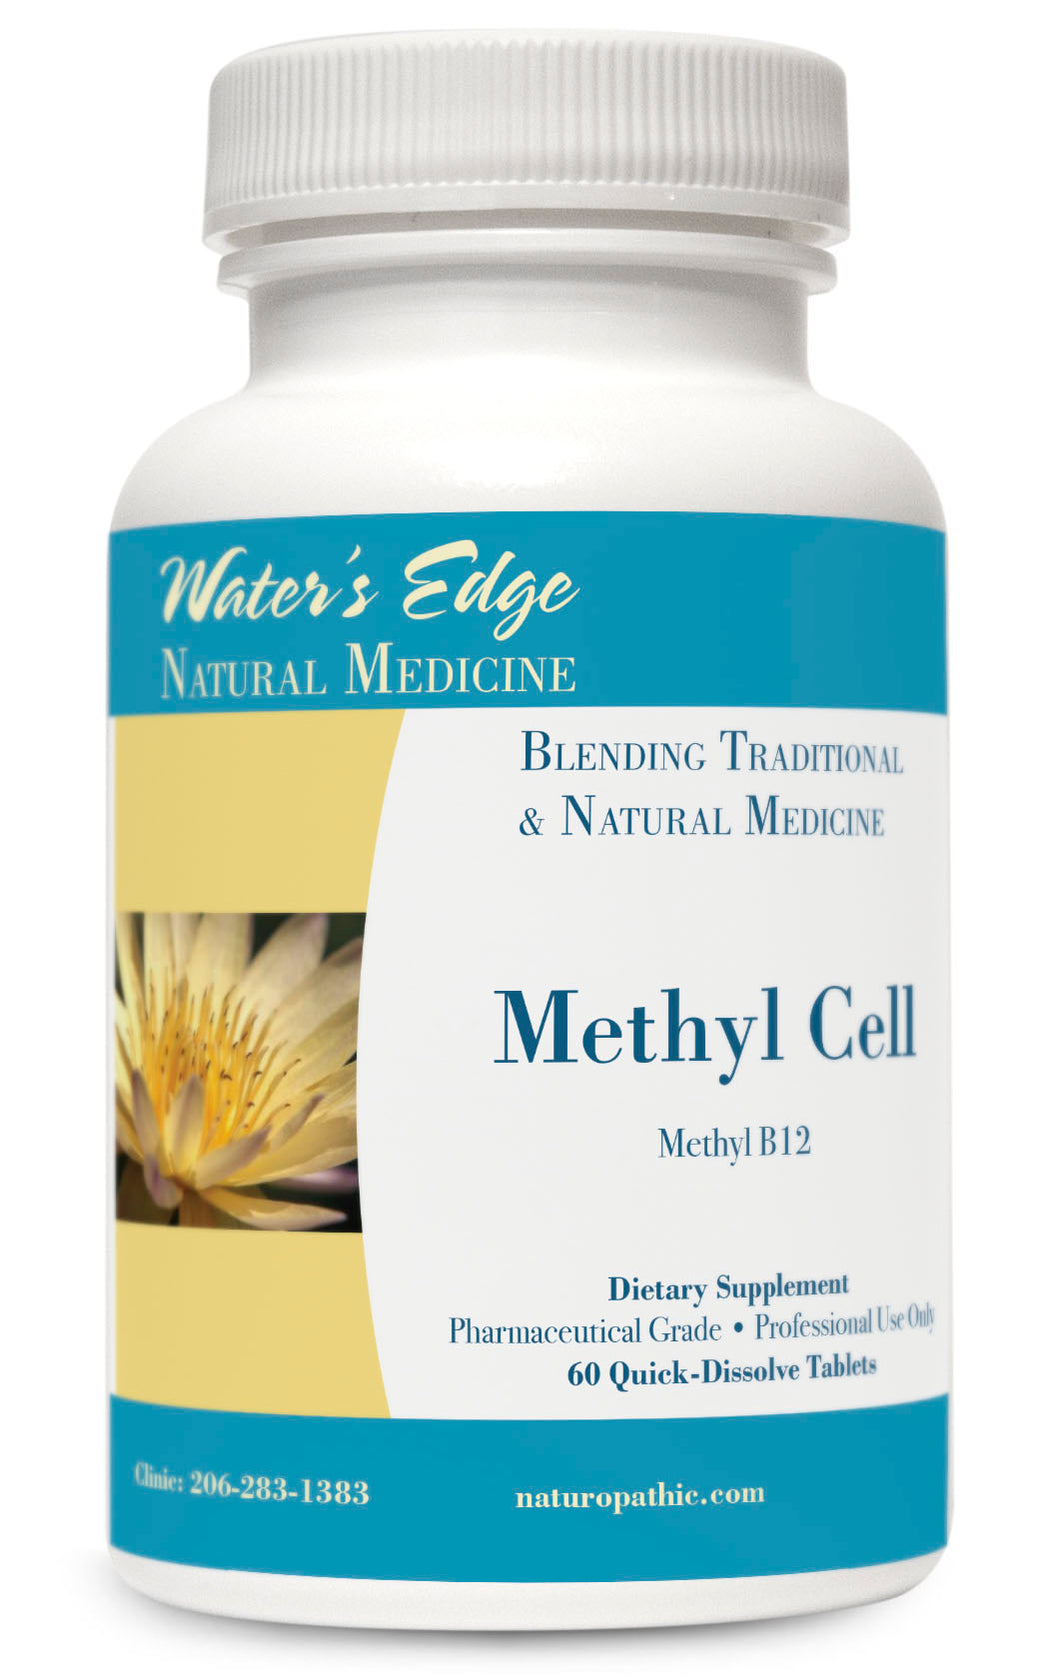 Methyl Cell